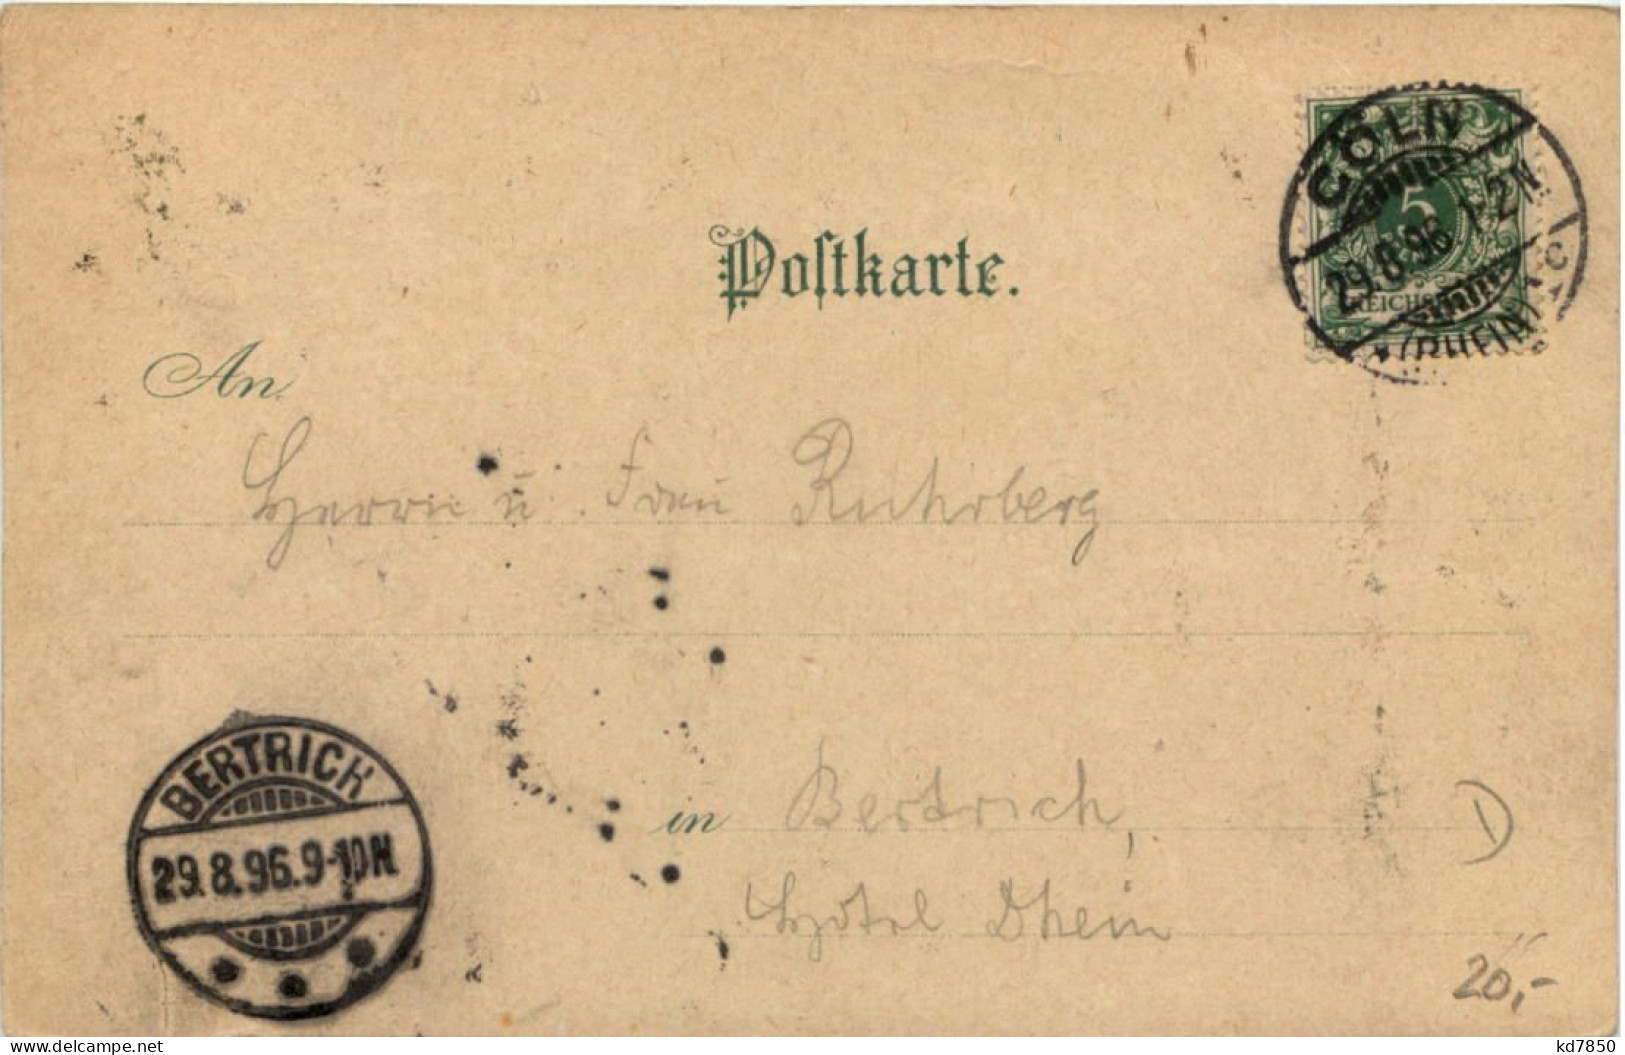 Gruss Aus Köln - Litho 1896 - Koeln